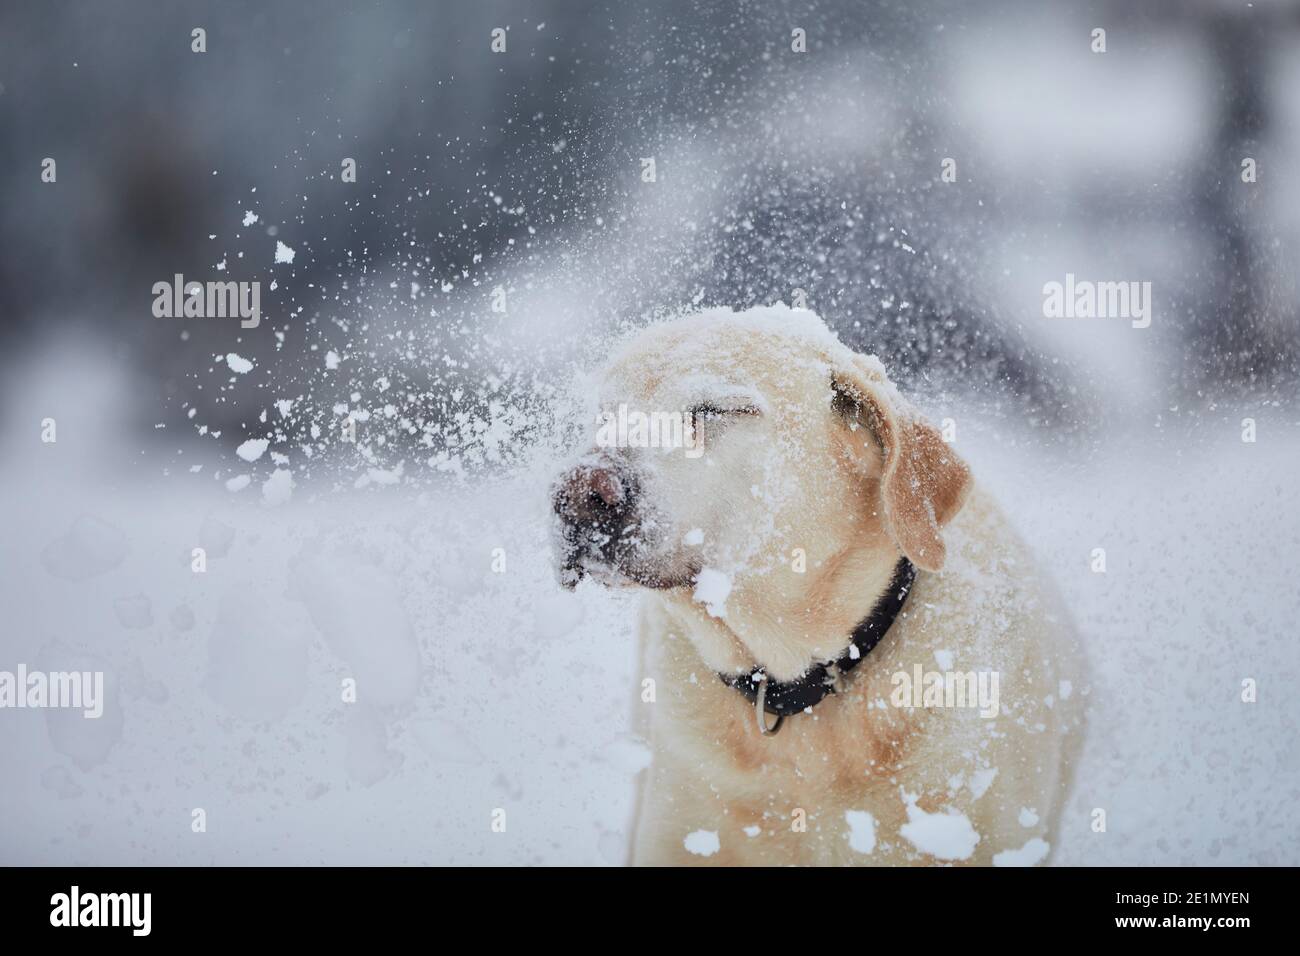 Divertente ritratto cane nella natura invernale. Labrador Retriever godendo di neve in polvere. Foto Stock